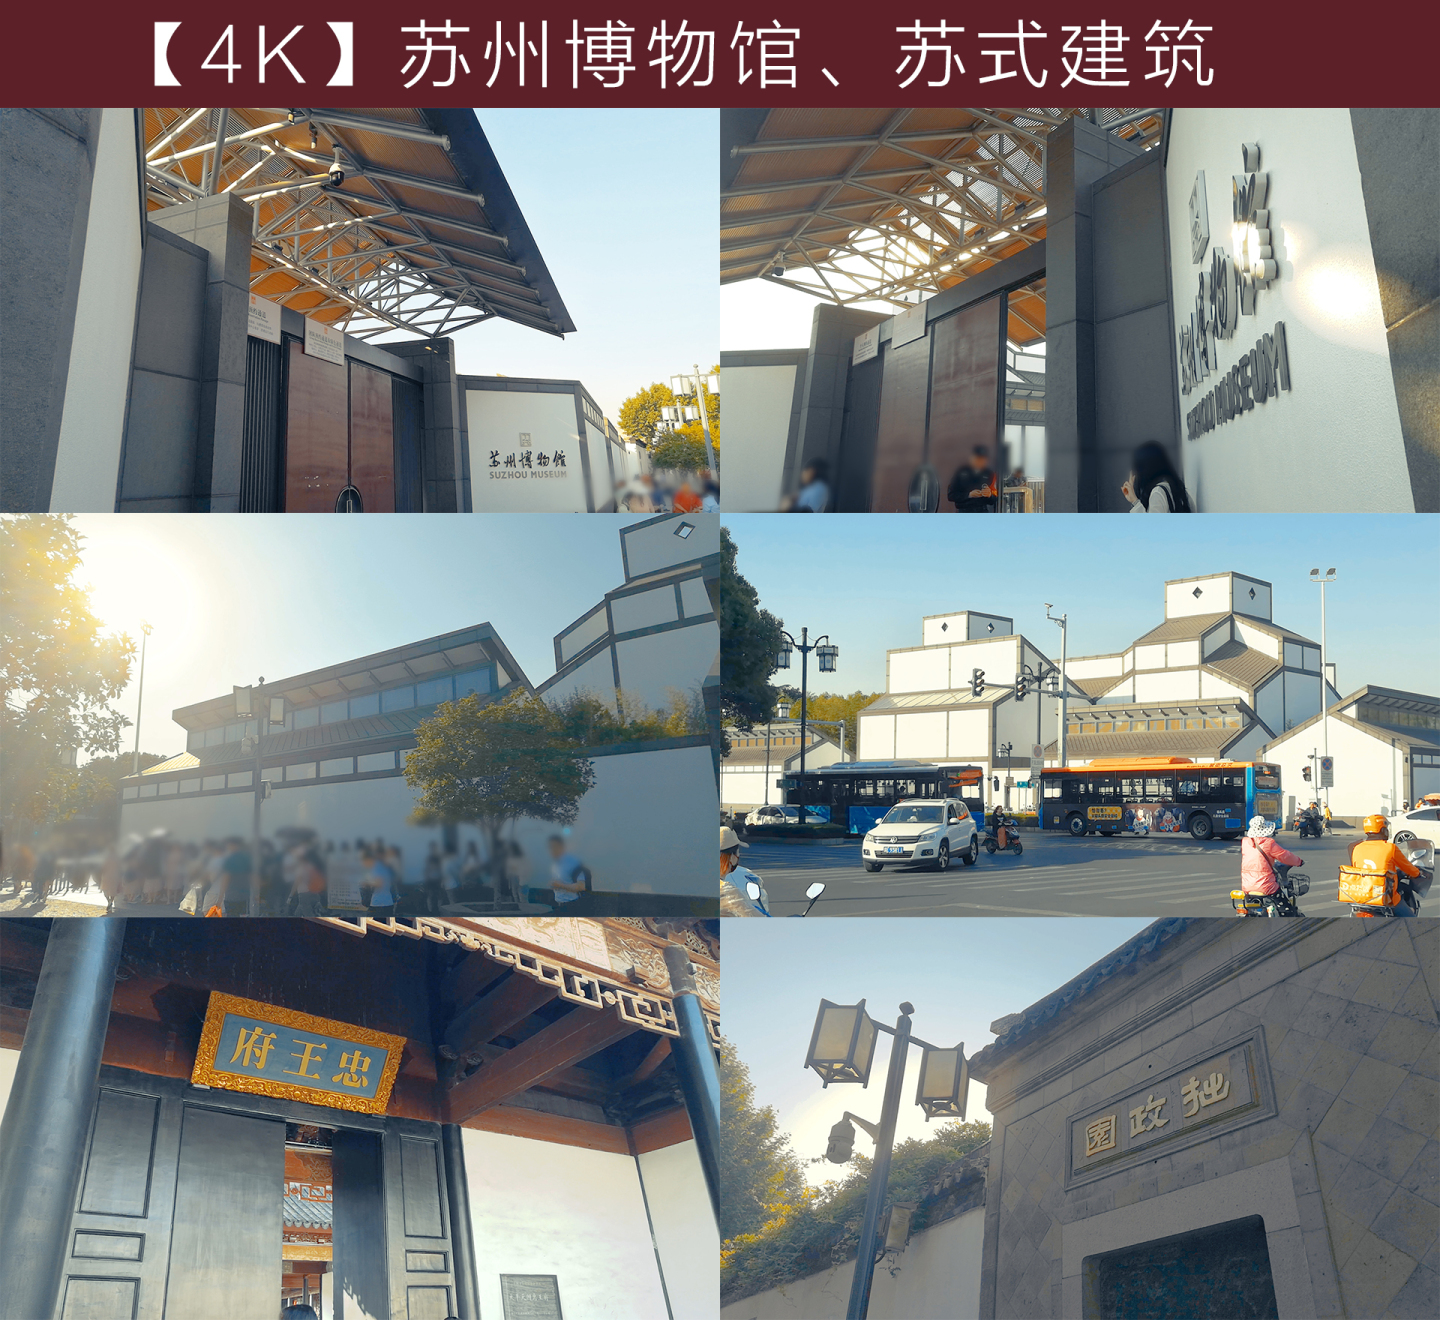 4K苏州博物馆、苏式建筑